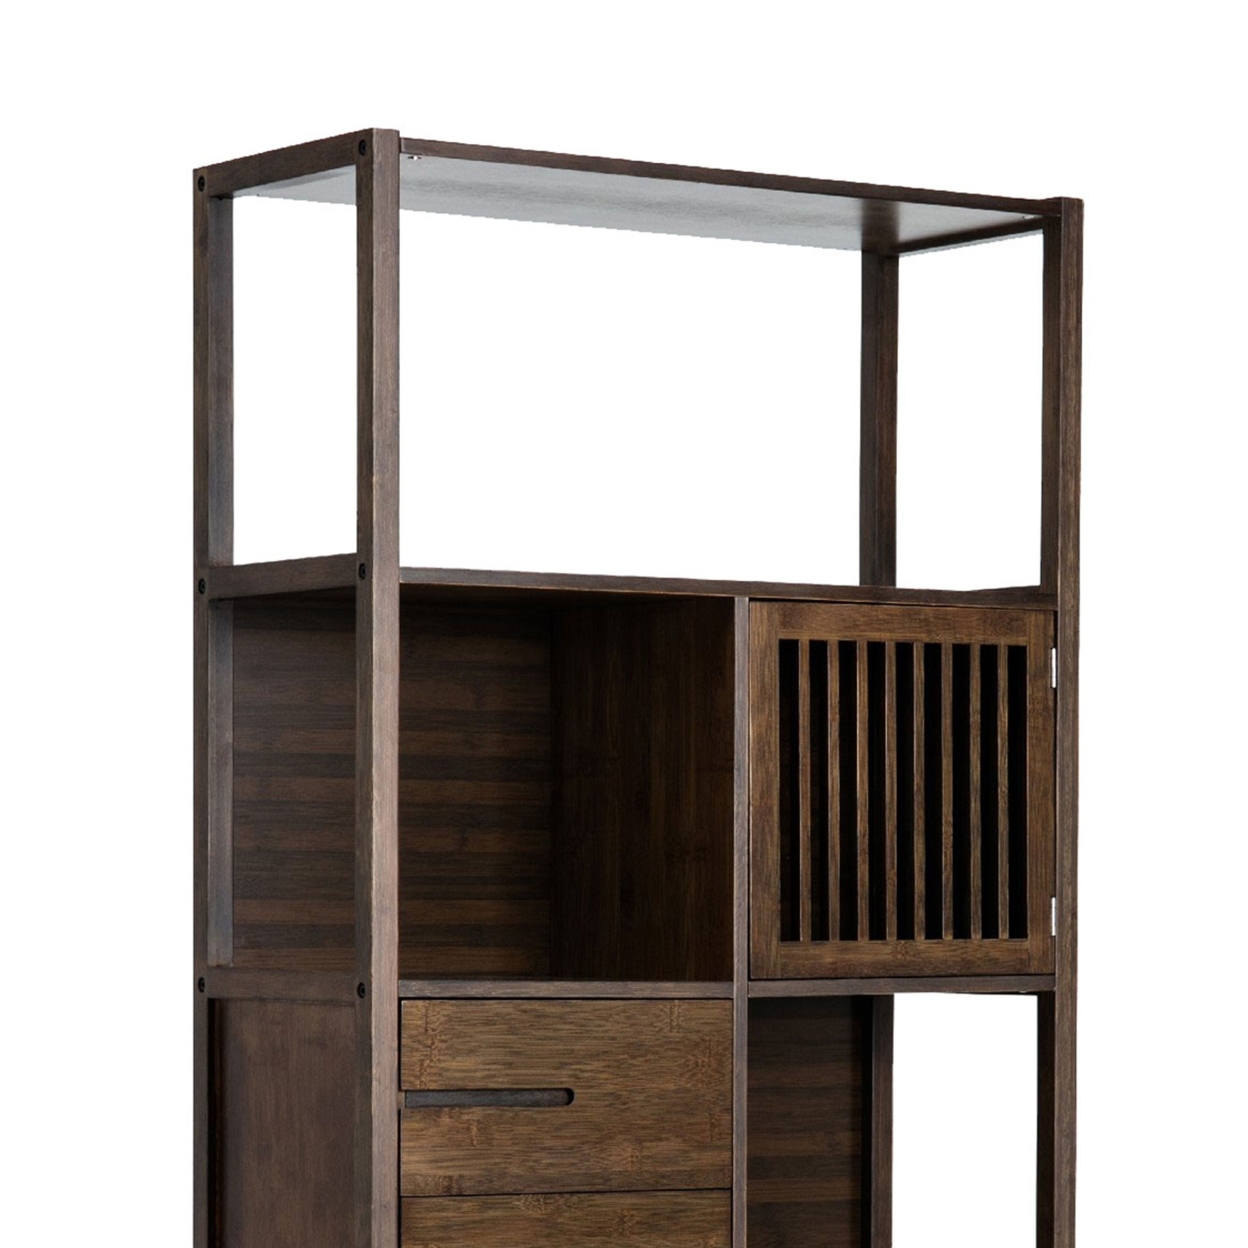 Axa 68 Inch Bamboo Shelf Bookcase With Cabinet, Right Facing, Dark Brown- Saltoro Sherpi